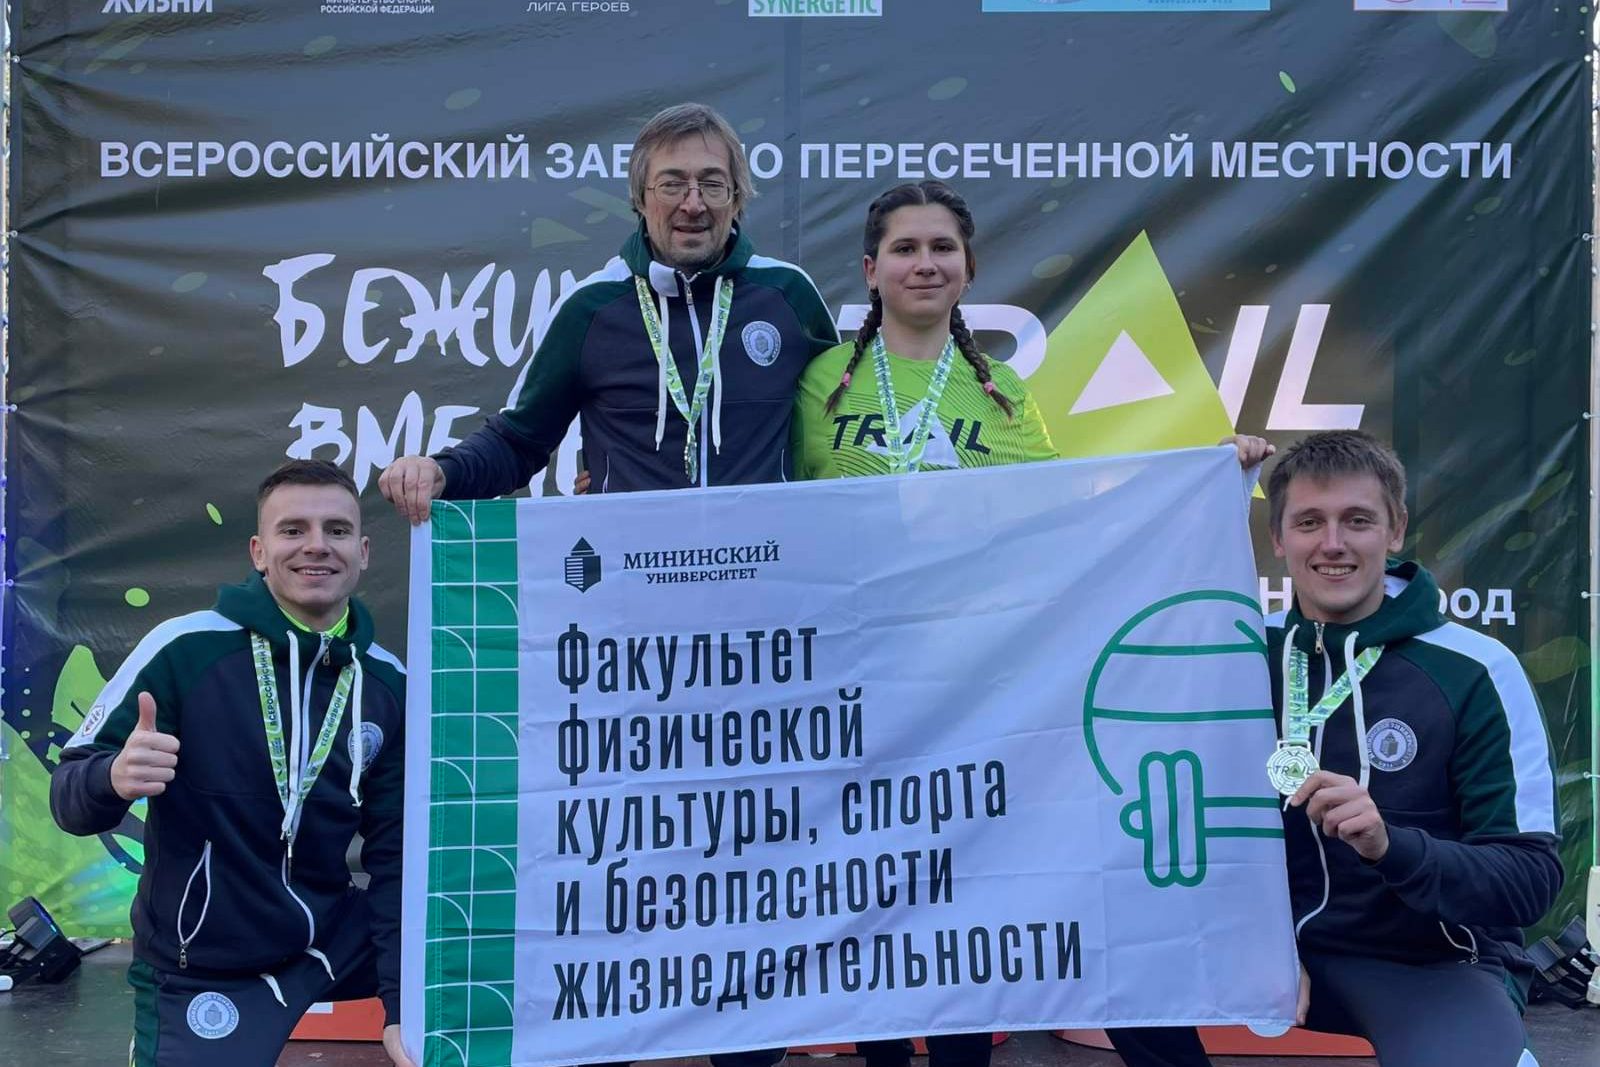 Преподаватель и студенты Мининского завоевали бронзу и золото всероссийского забега «Бежим вместе»